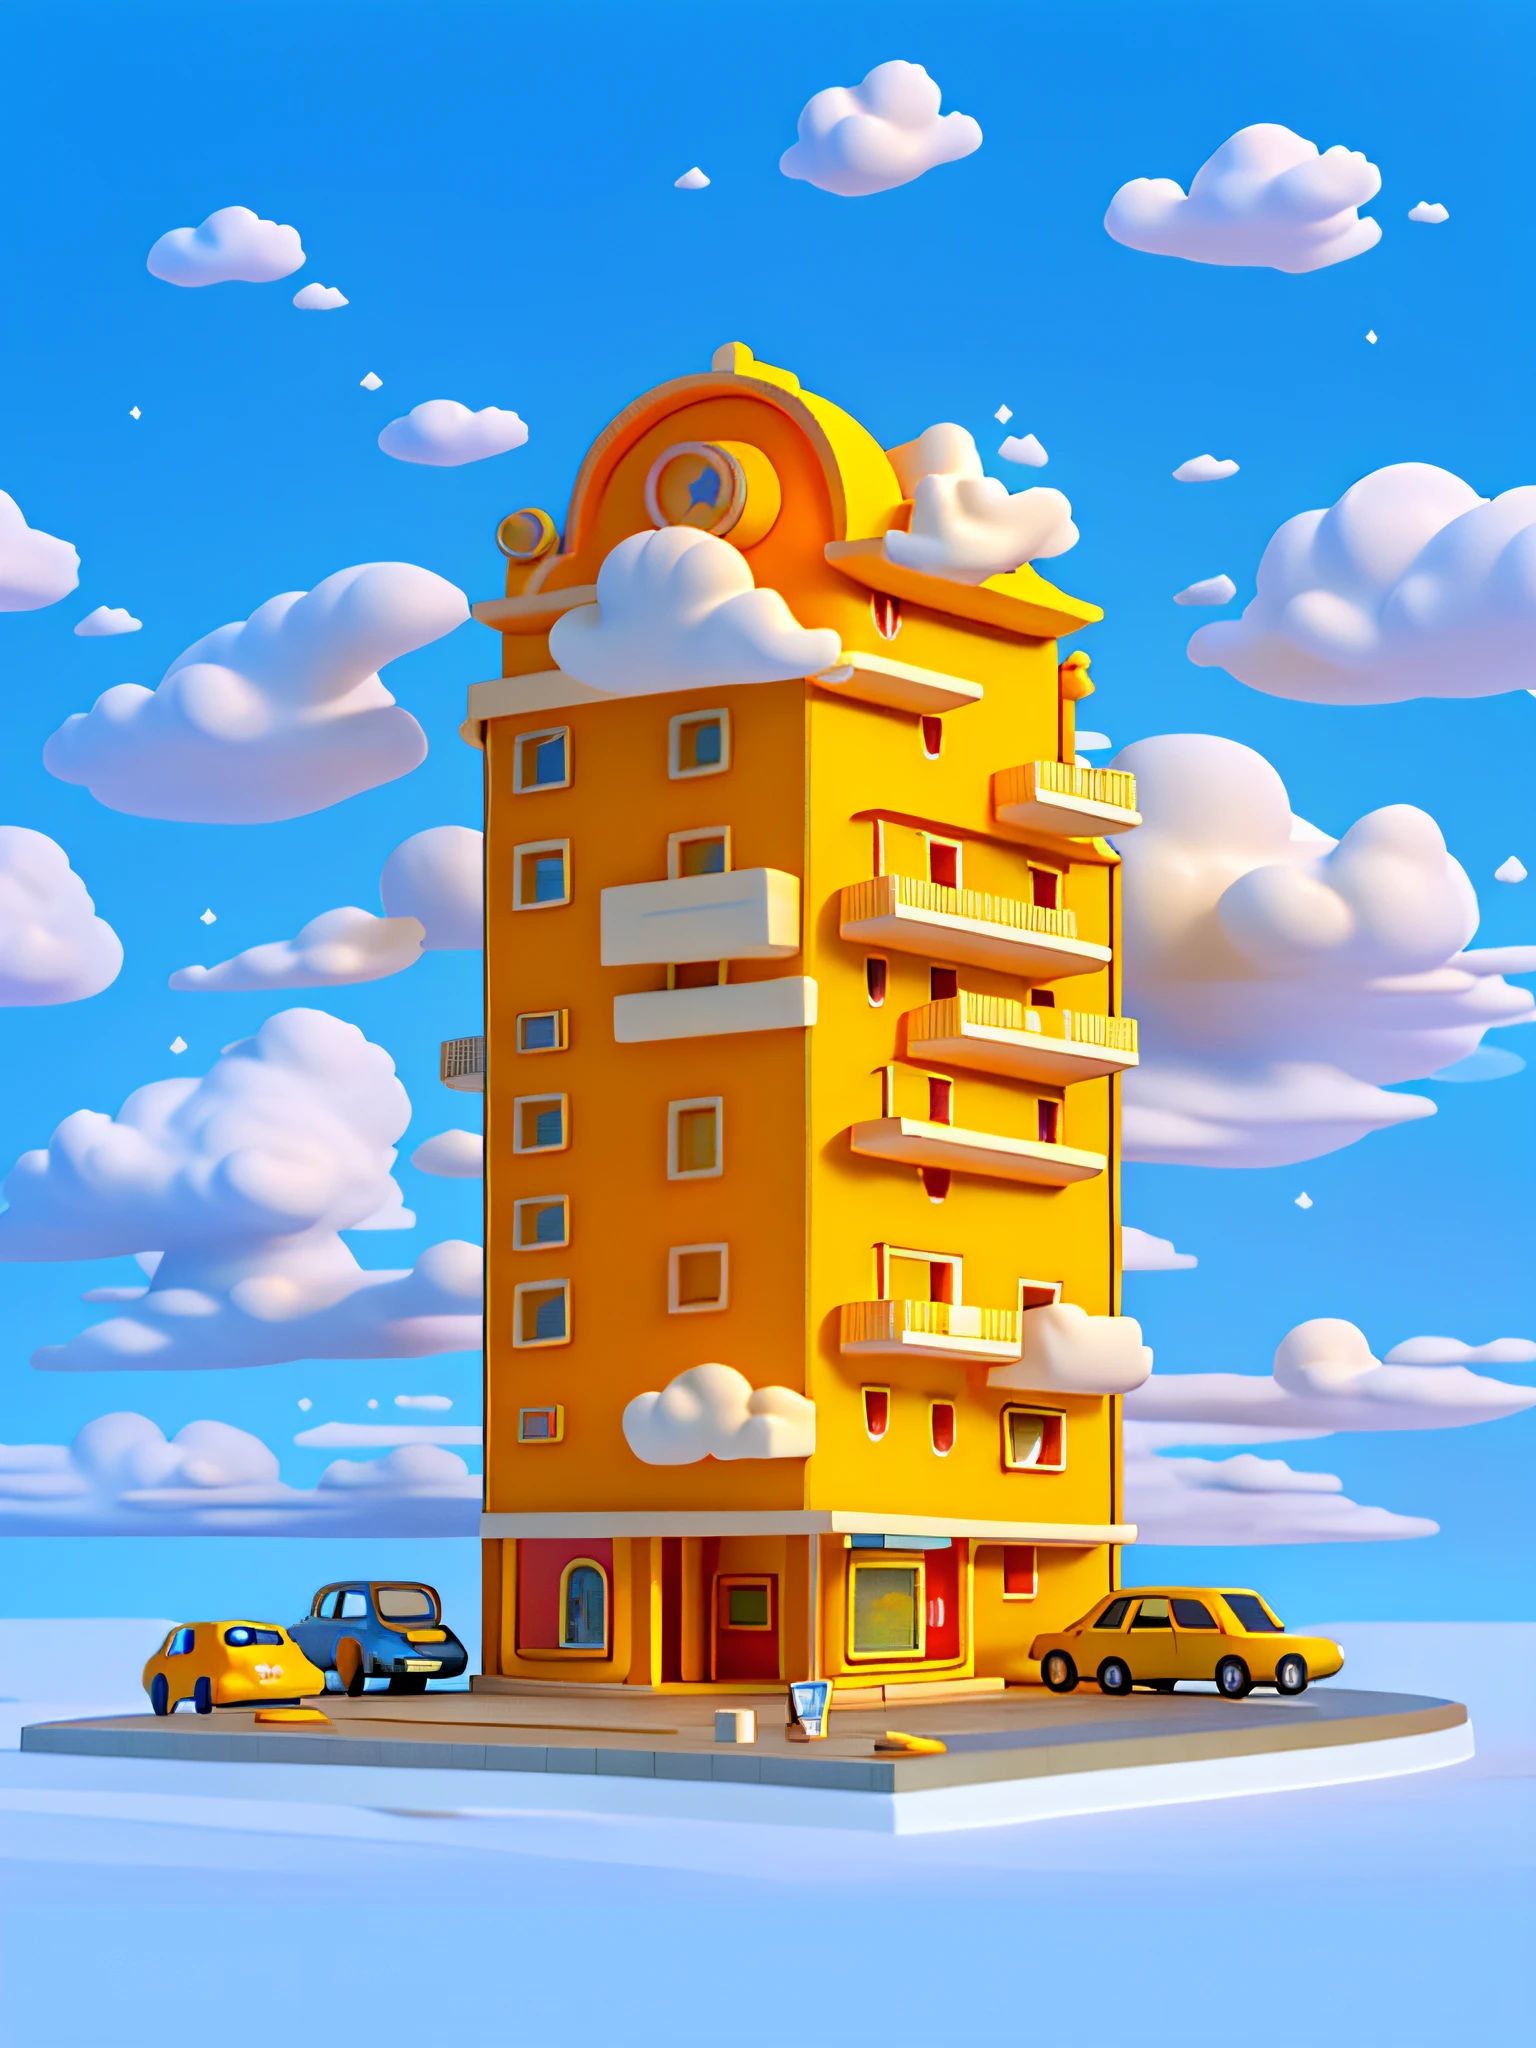 (걸작), (최고의 품질), (매우 상세한) 간단한 만화 호텔 건물, 호텔 저층 빌딩, 장난감 모델, 구름, 자동차, 평면도, 깨끗한 배경, 옅은 노란색과 옅은 주황색 건물,